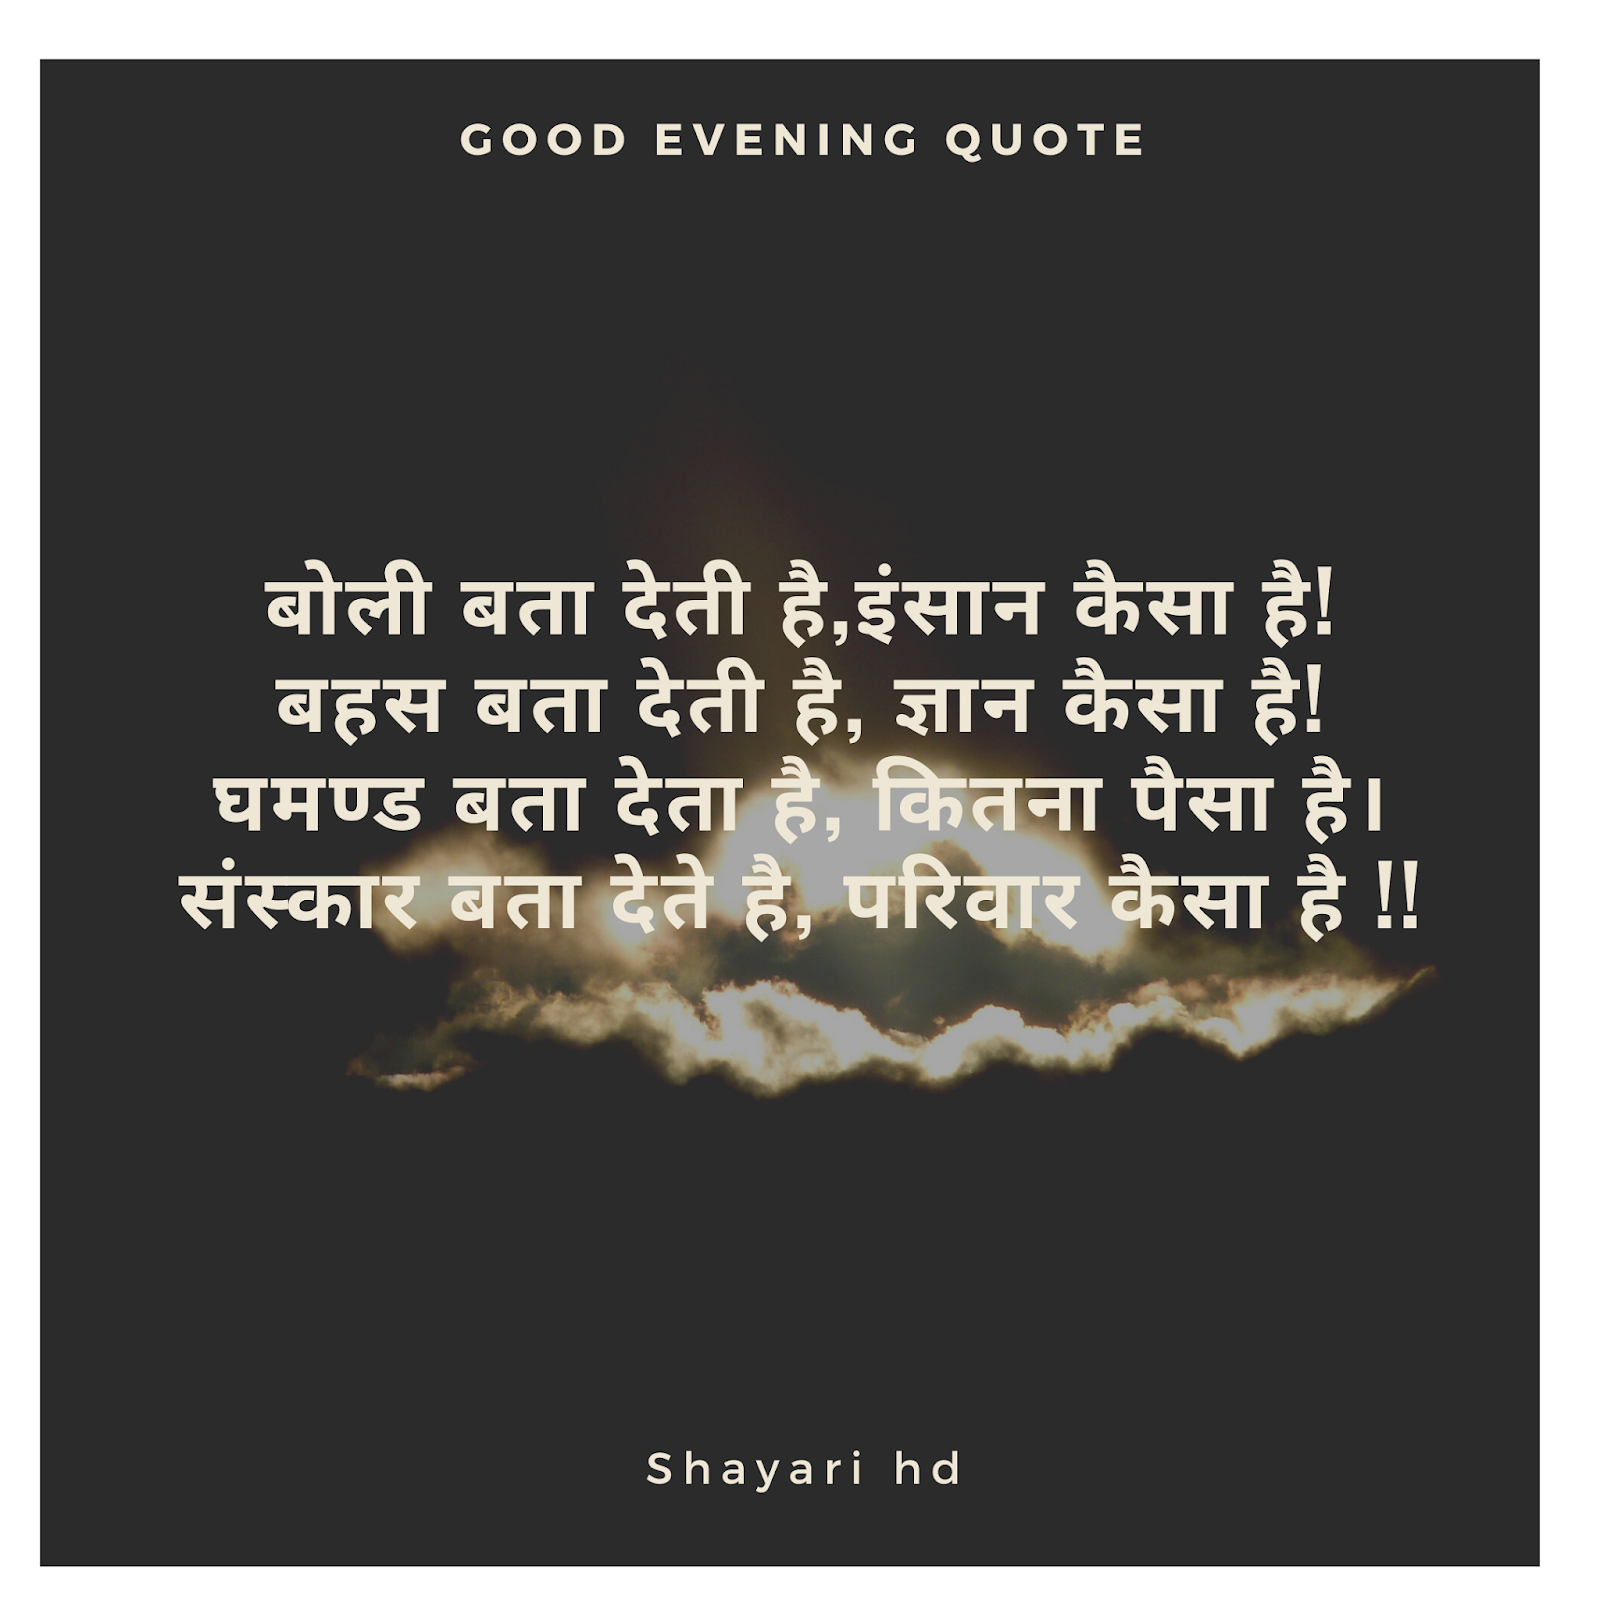 Best Gulzar Hindi Shayari Collection Gulzar Quotes Status Images Shayari hindi shayari sad shayari love shayari urdu shayari shayari status bewafa shayari in hindi gulzar shayari in hindi on life? shayarihd